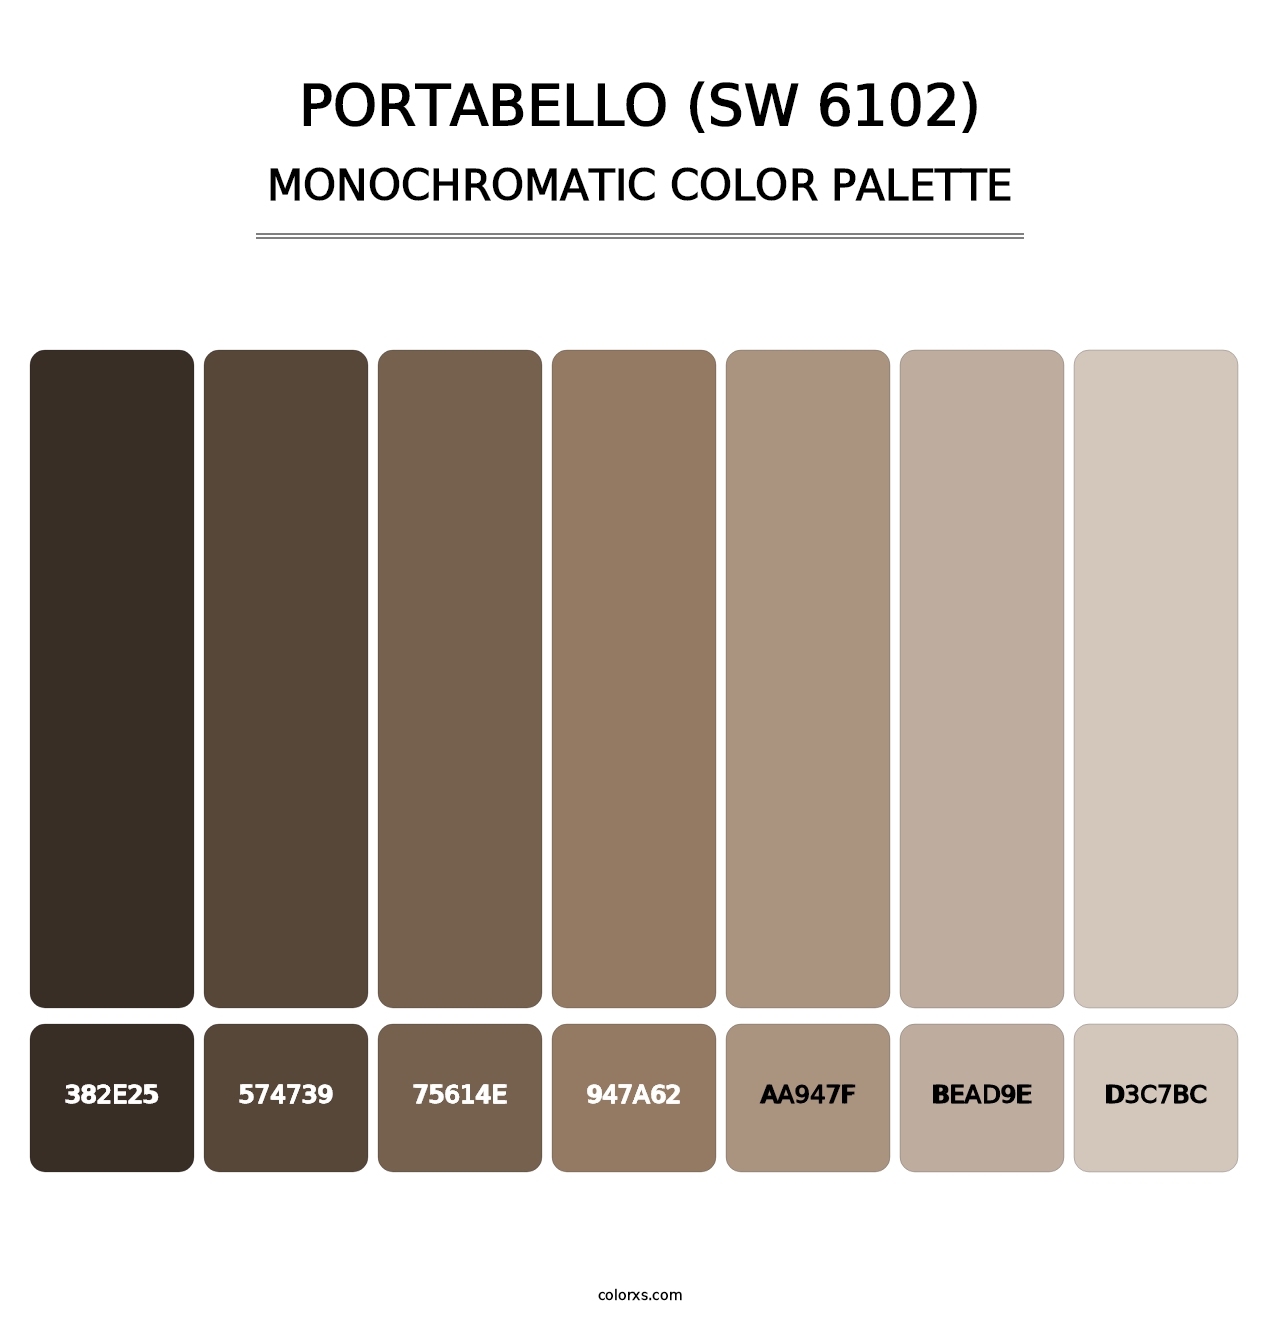 Portabello (SW 6102) - Monochromatic Color Palette